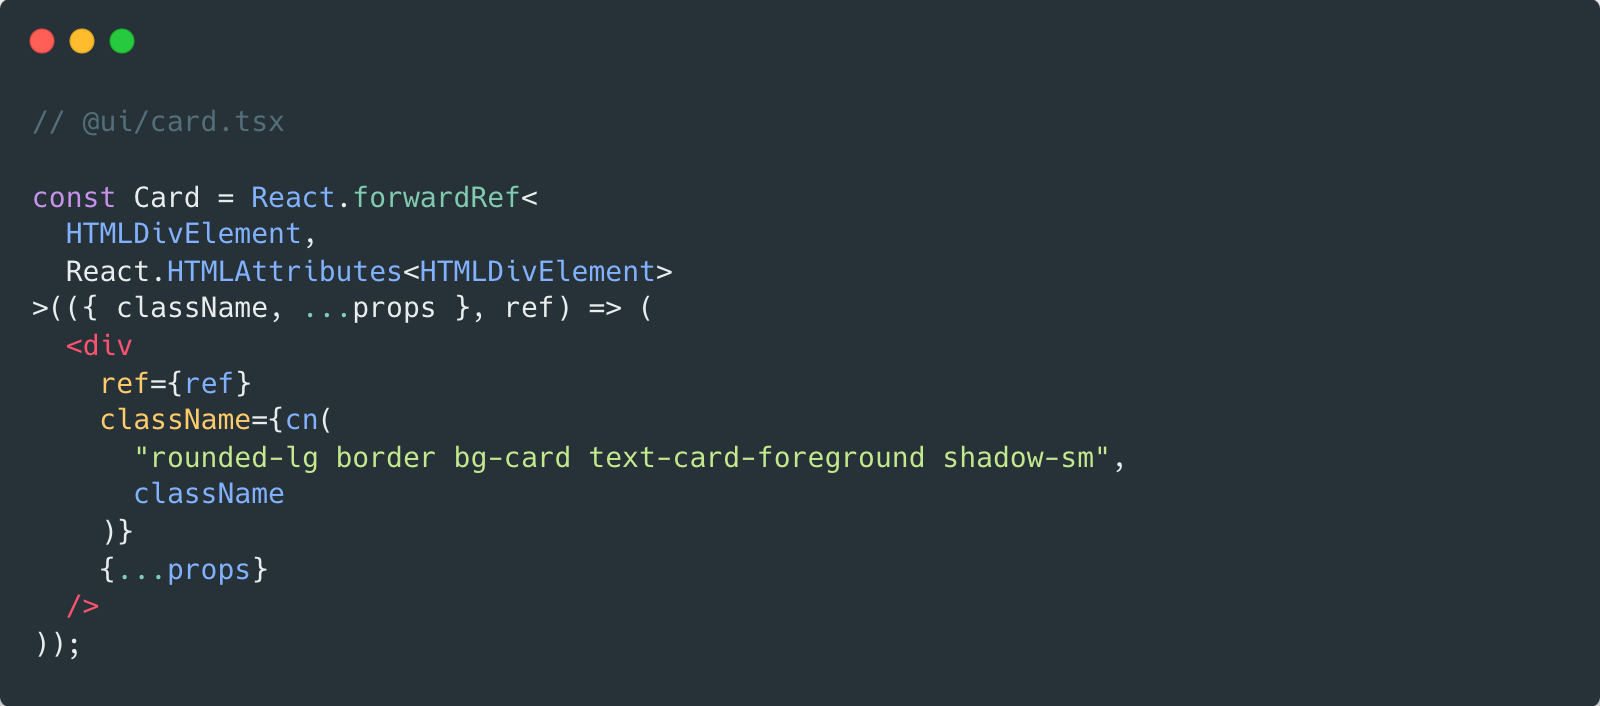 shadcn-ui가 제공하고 있는 Card 컴포넌트. 기본 스타일 값과 사용자가 입력한 값을 cn 함수의 매개변수로 넘기고 있다.